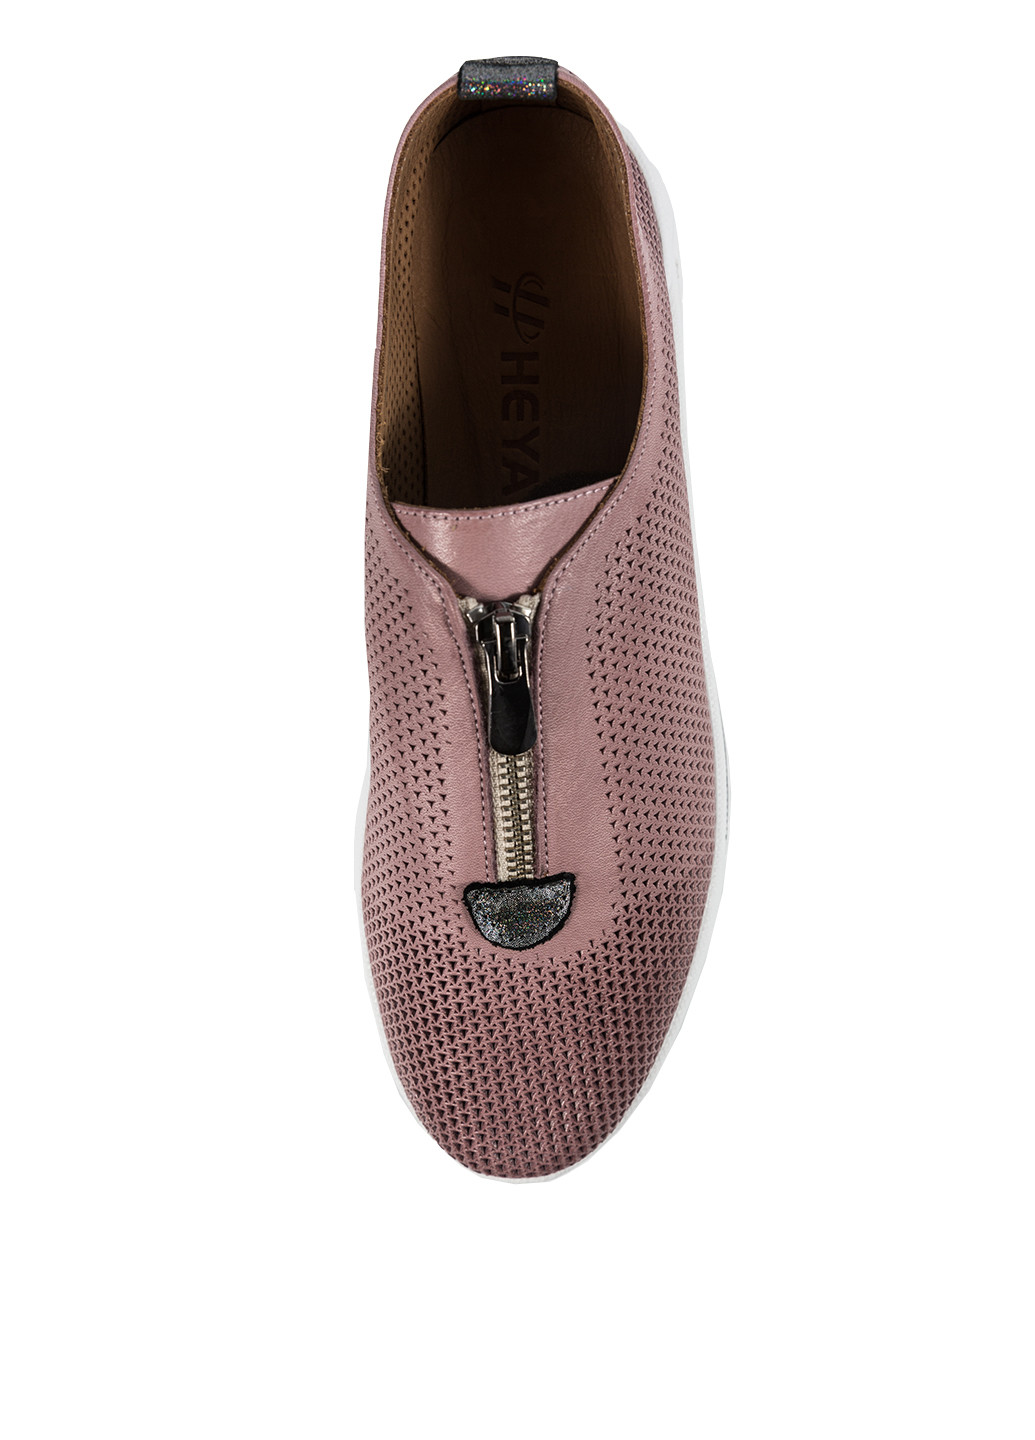 Розово-коричневые мокасины Heya Shoes с белой подошвой, с перфорацией